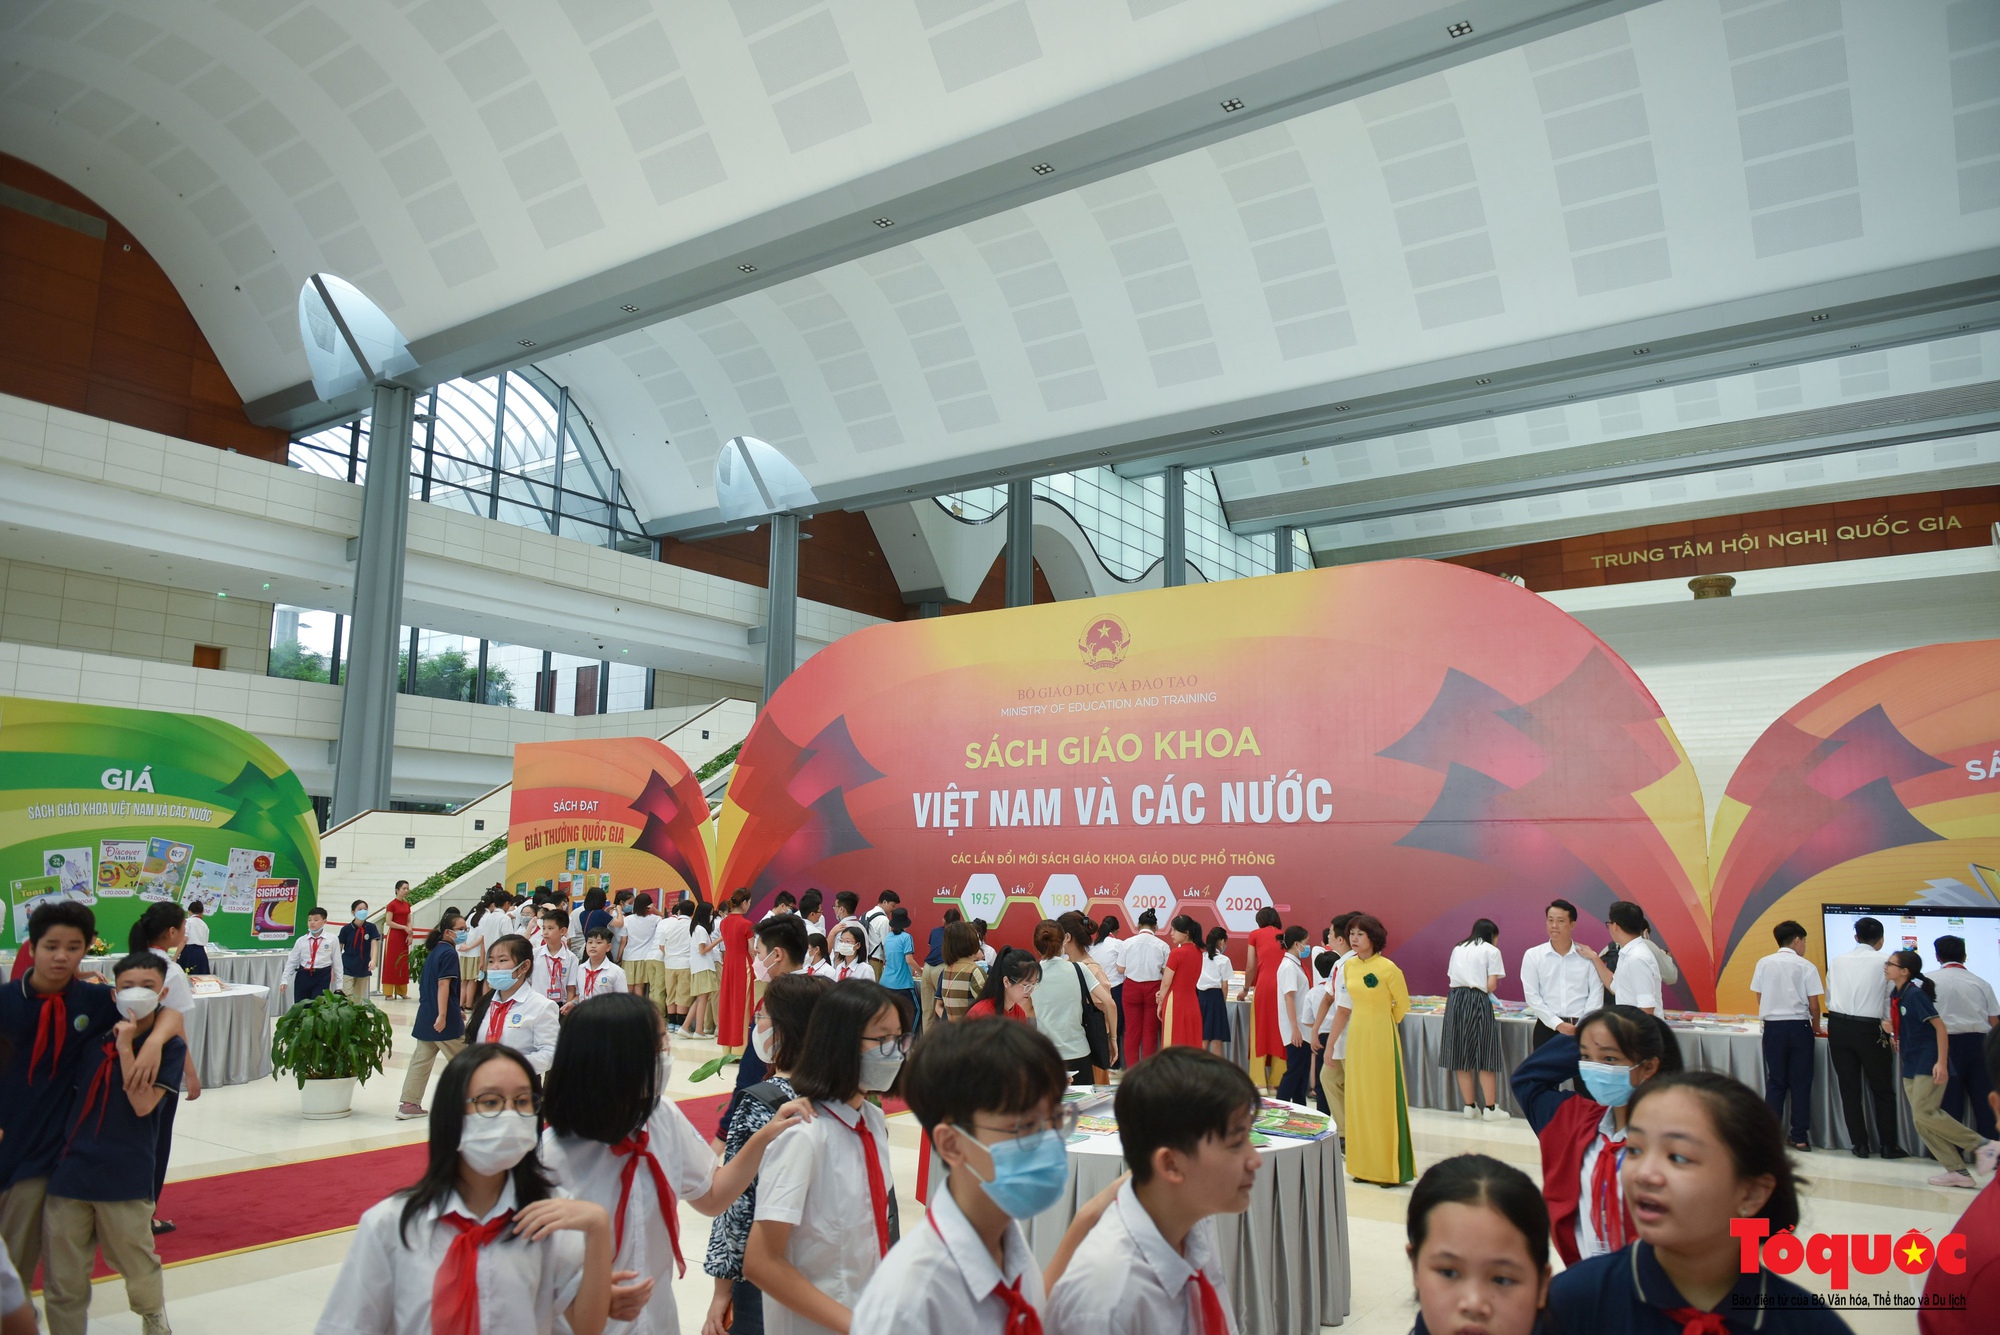 Hà Nội: Học sinh thủ đô hào hứng với hoạt động Trưng bày sách giáo khoa giáo dục phổ thông - Ảnh 1.